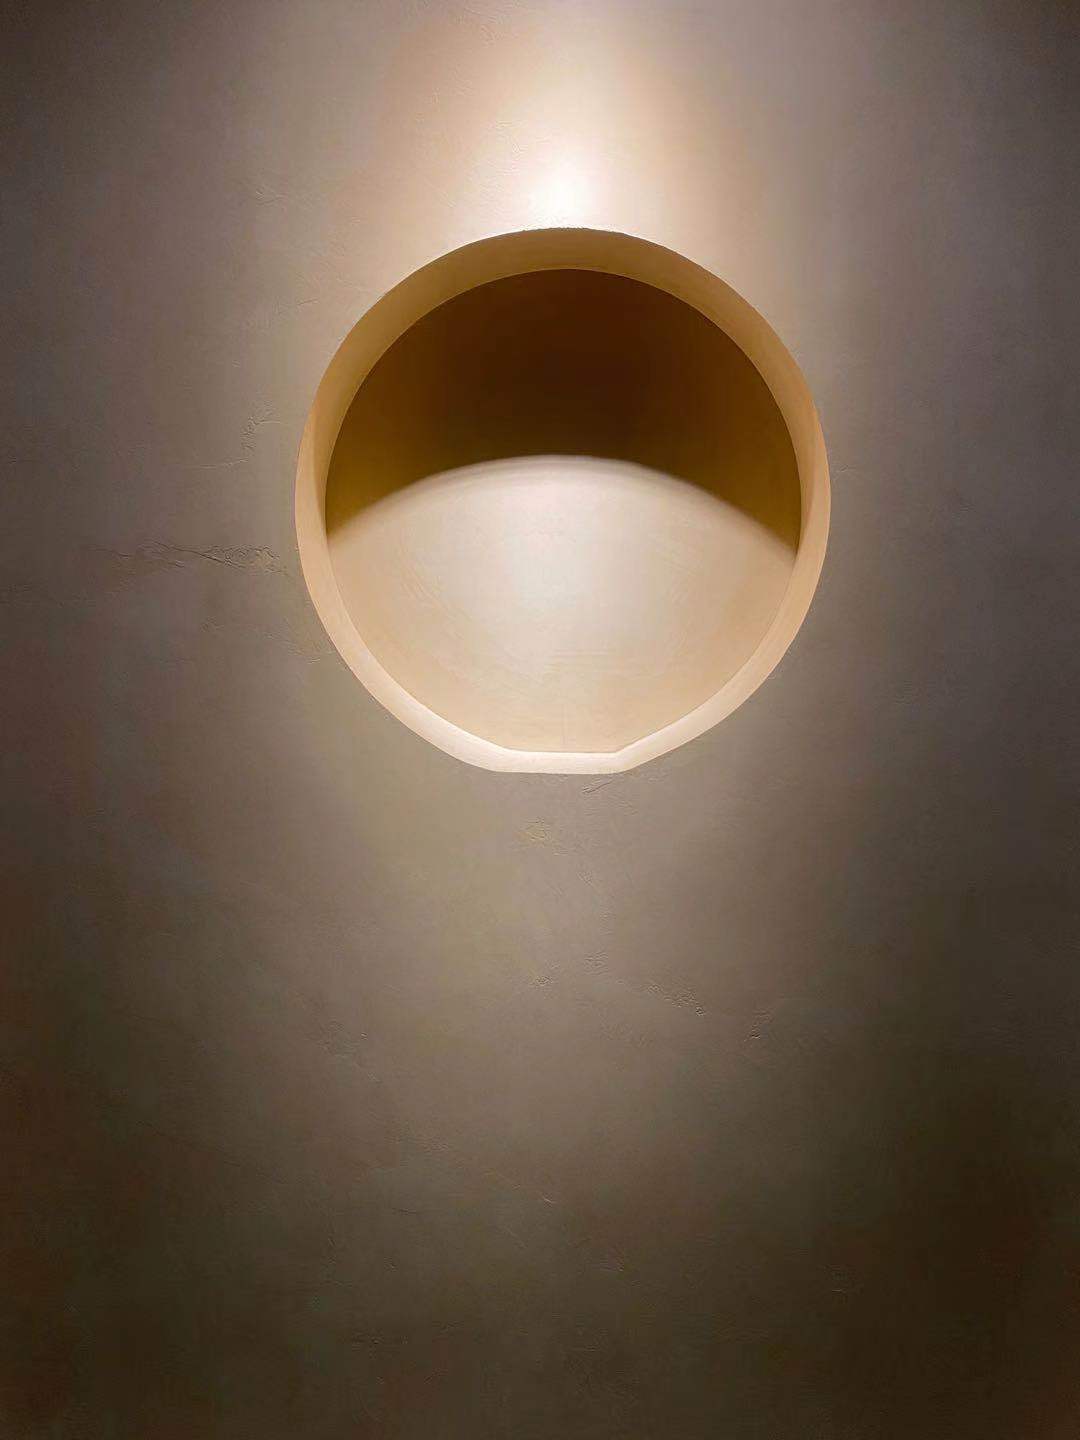 Микроцемент на стената на дом в минималистичен стил с осветление, което подчертава покритието